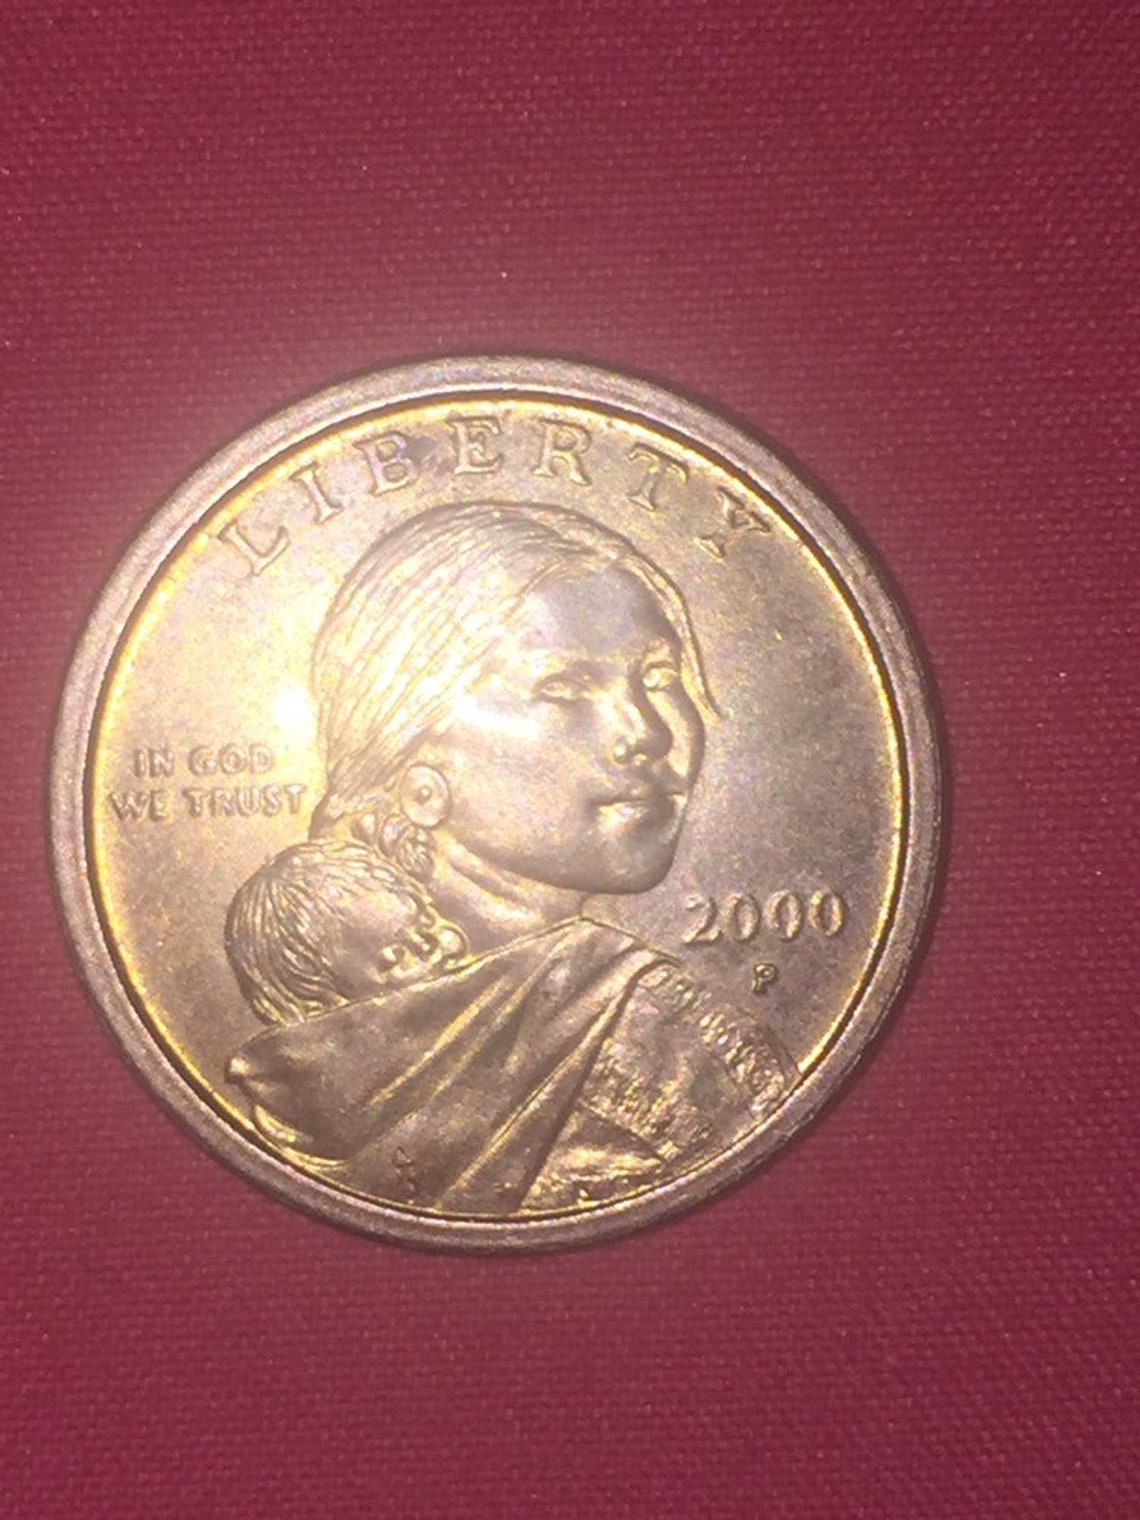 Cheerios 2000 P Sacagawea coin | Etsy